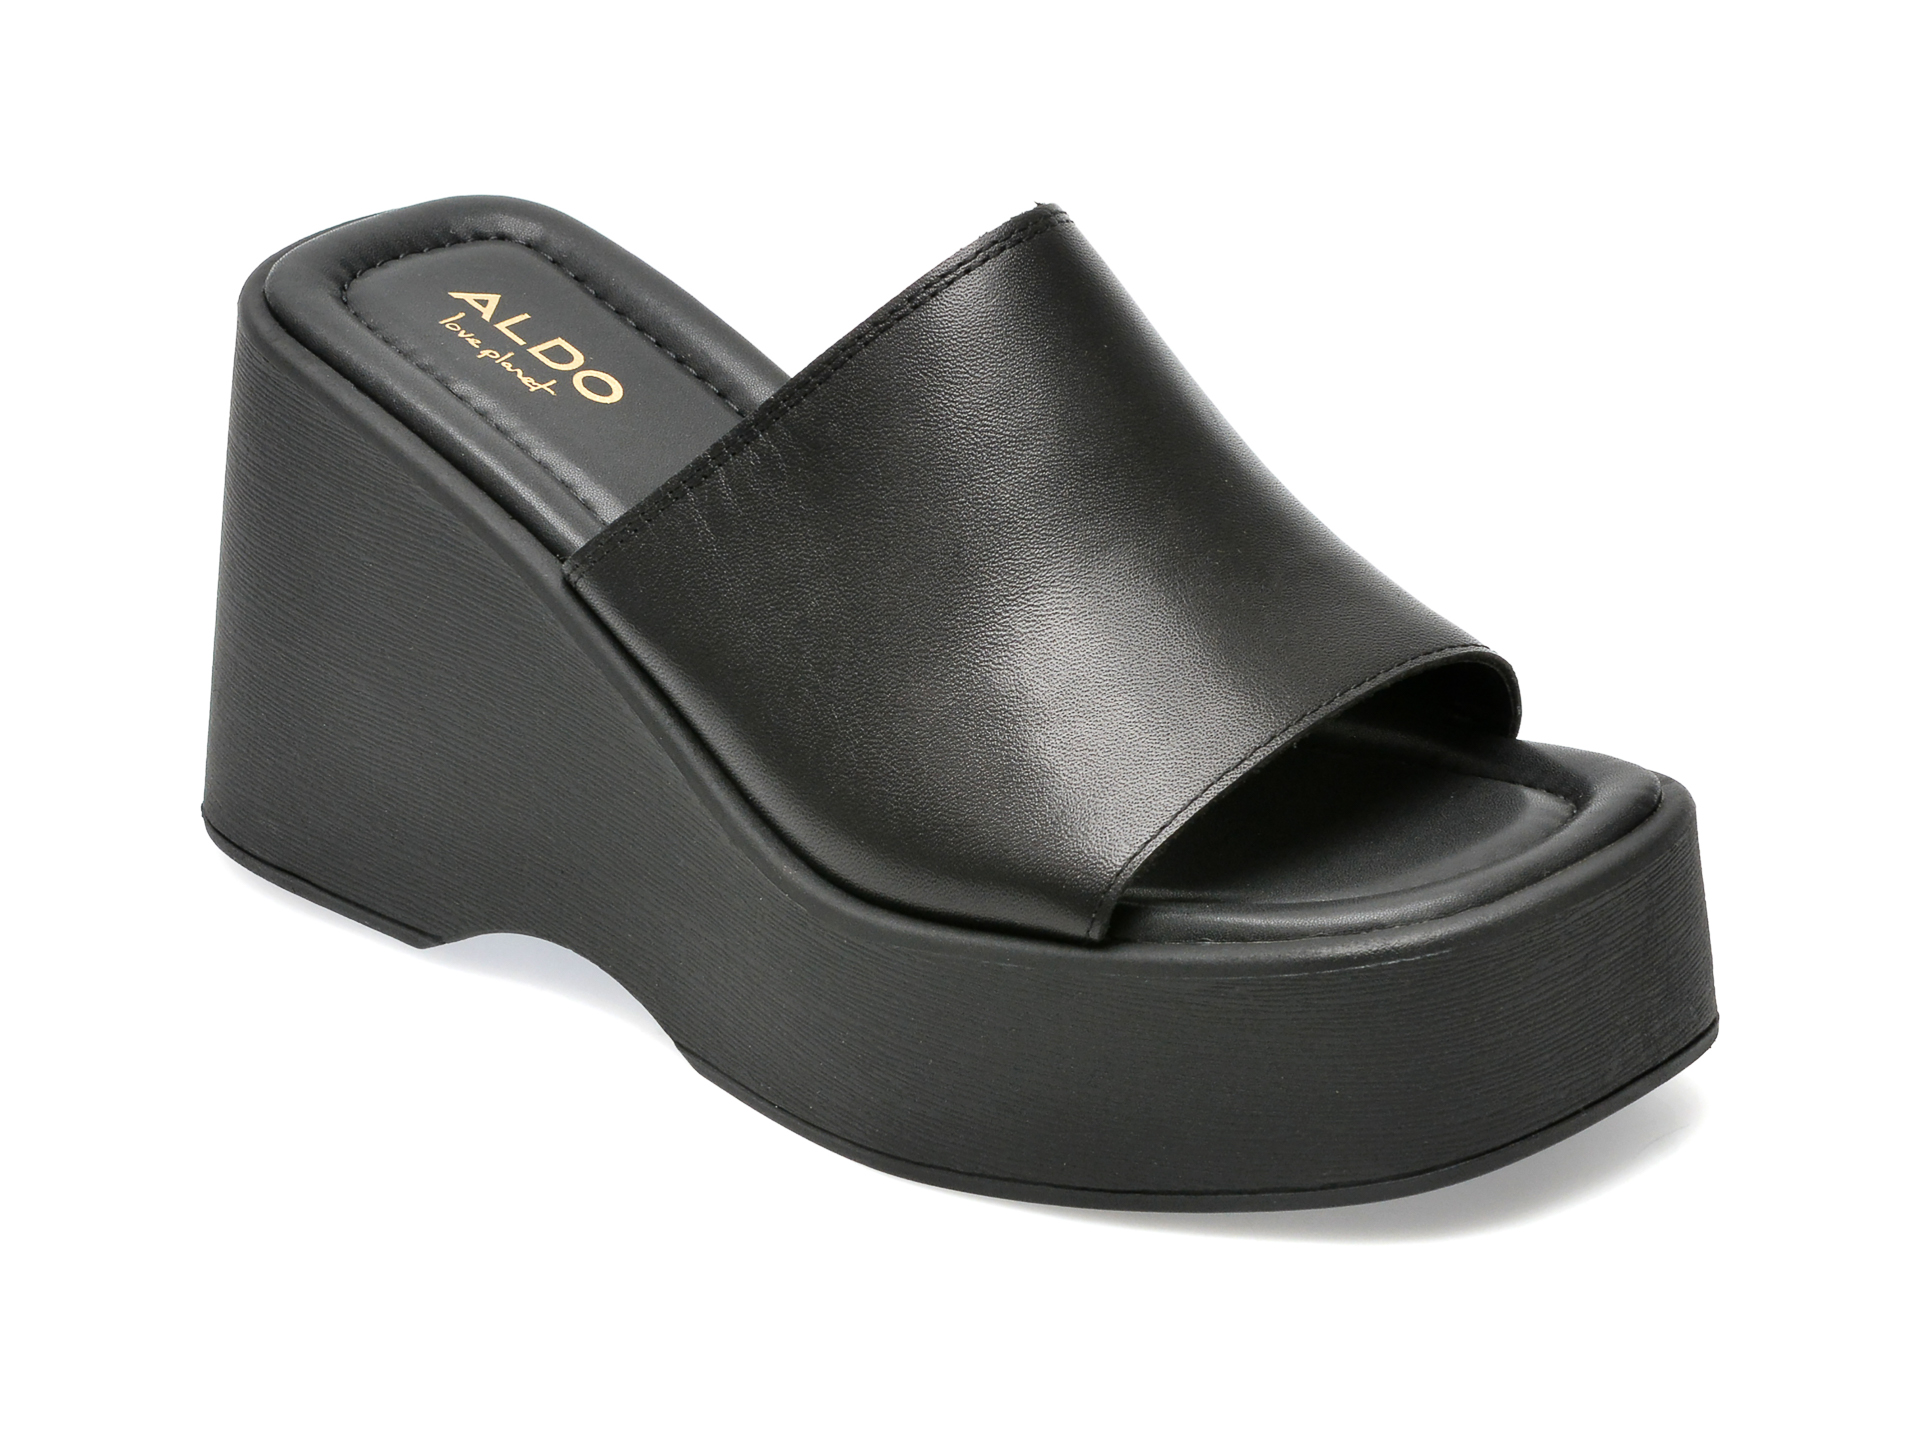 Sandale ALDO negre, BETTA001, din piele naturala